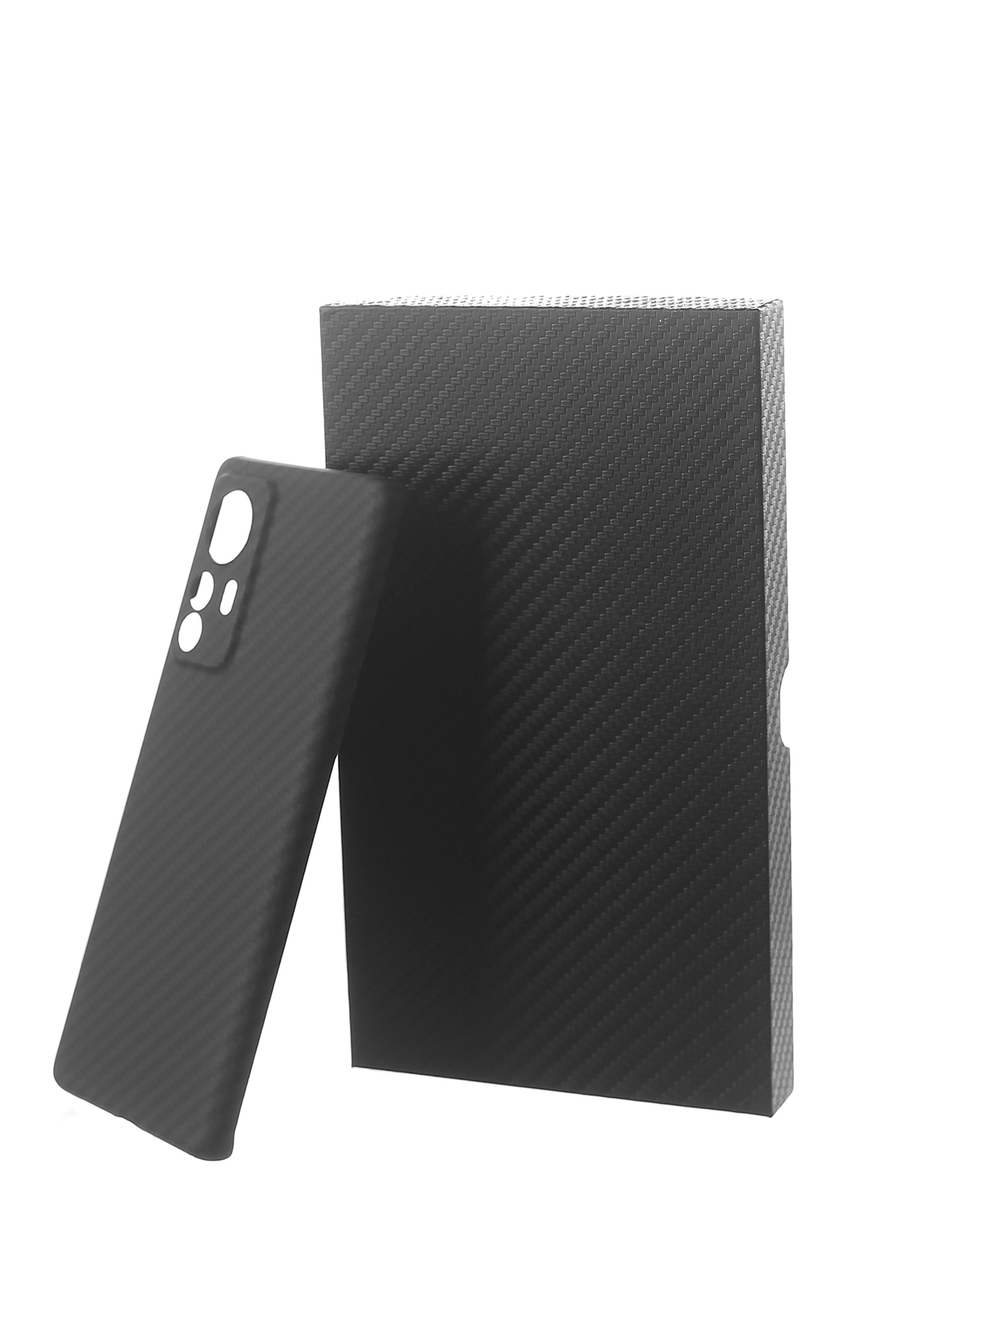 Чехол Сarbon Fiber Case для Xiaomi Mi 12 Pro